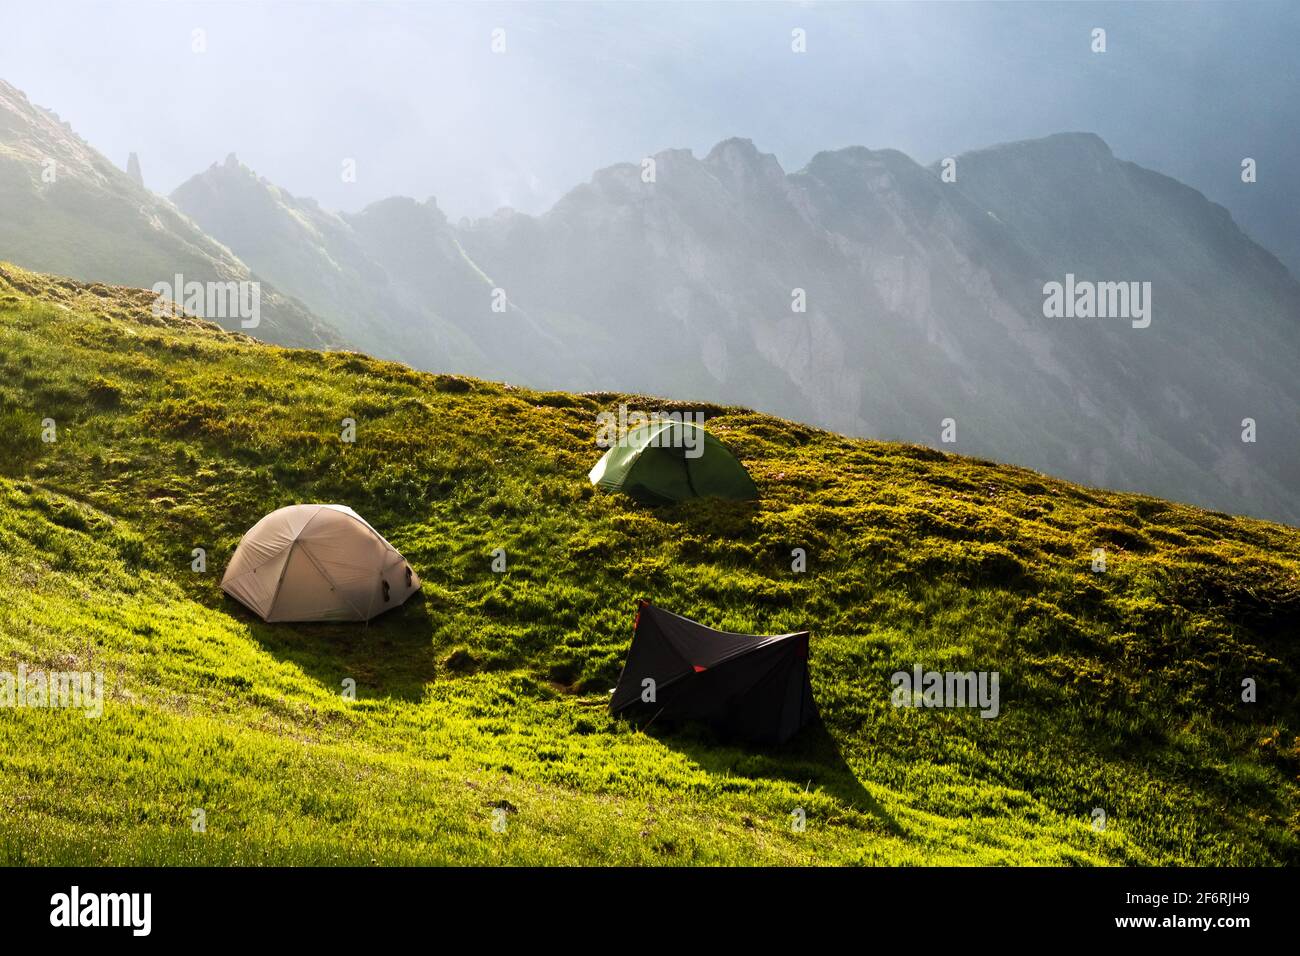 Trois tentes de touristes campent sur un incroyable pré dans les montagnes de printemps. Photographie de paysage, concept de voyage Banque D'Images